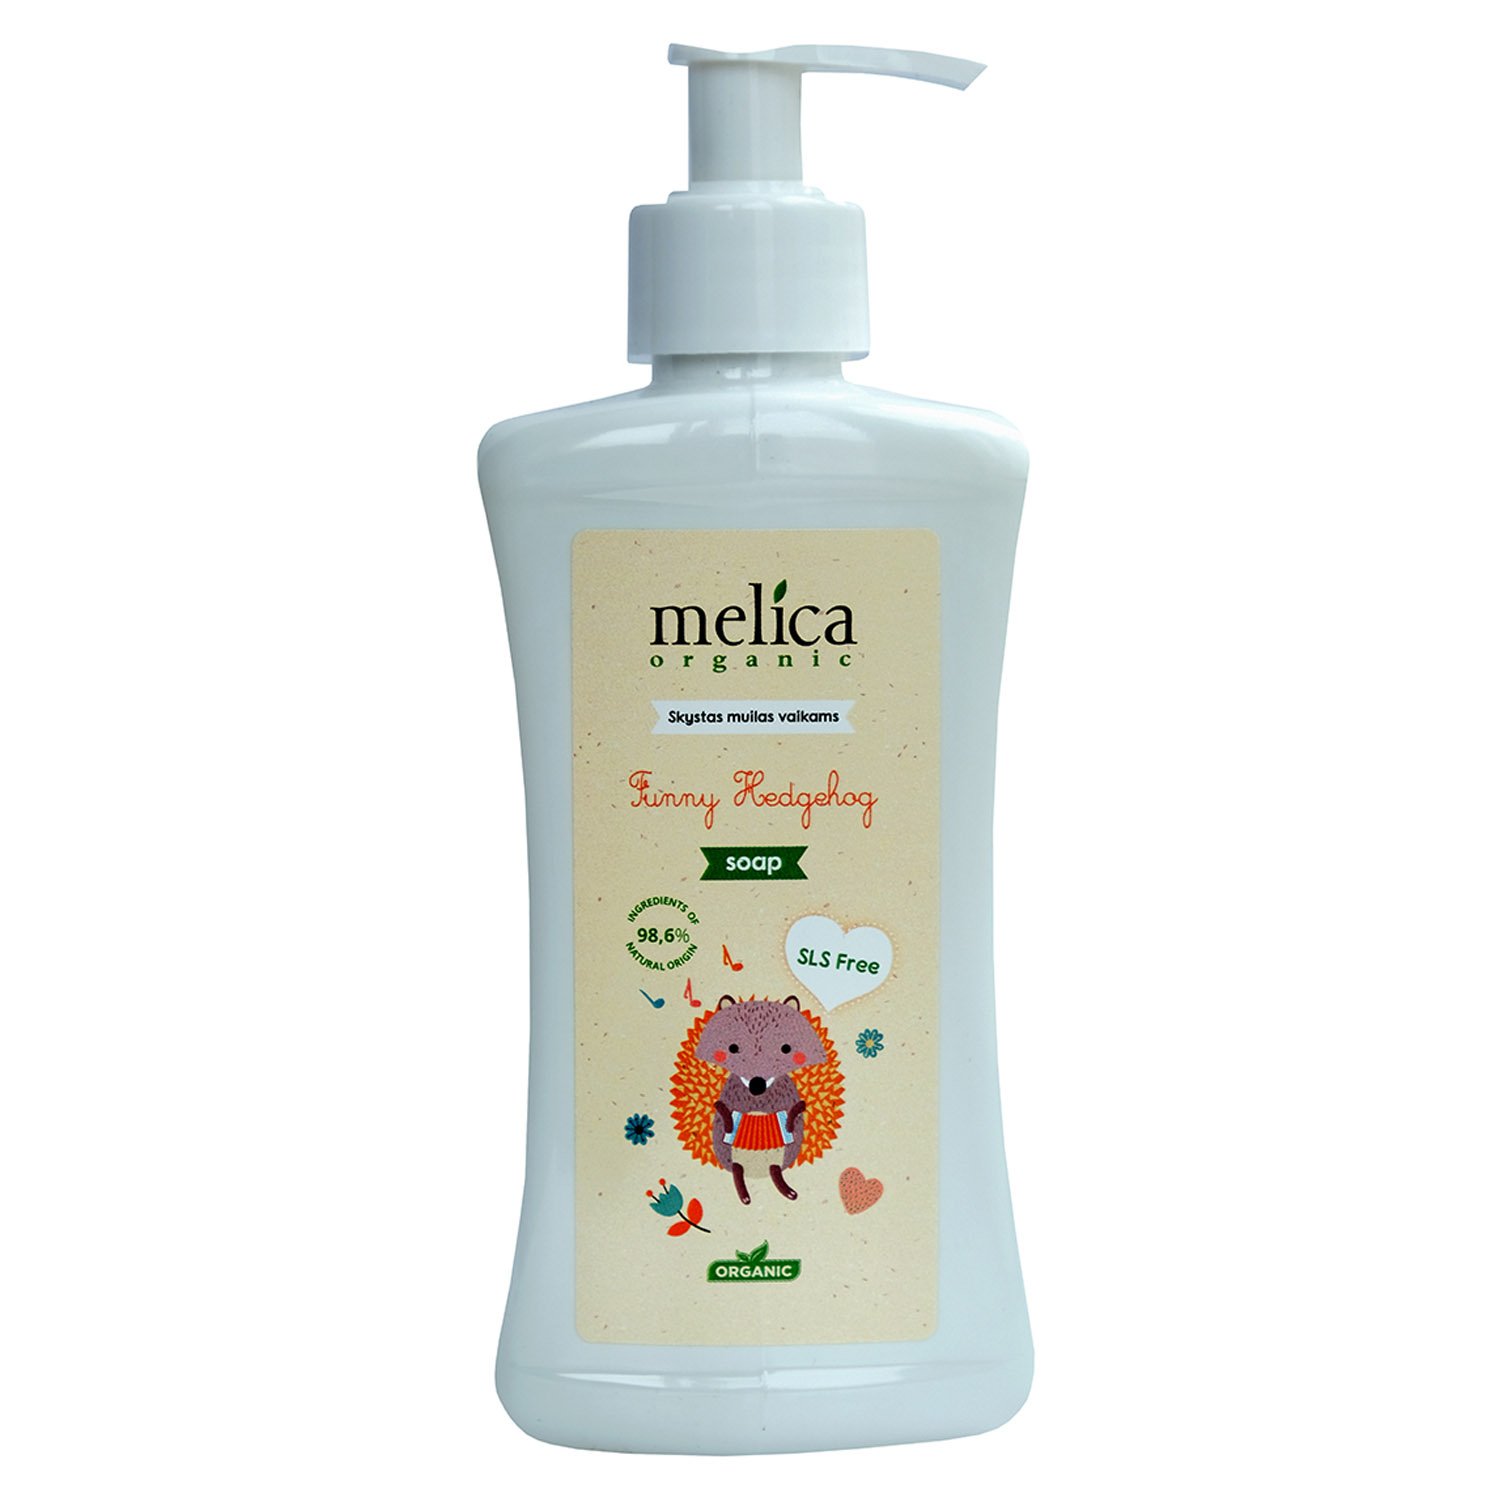 Дитячий шампунь Melica Organic Від вовченя, 300 мл - фото 1